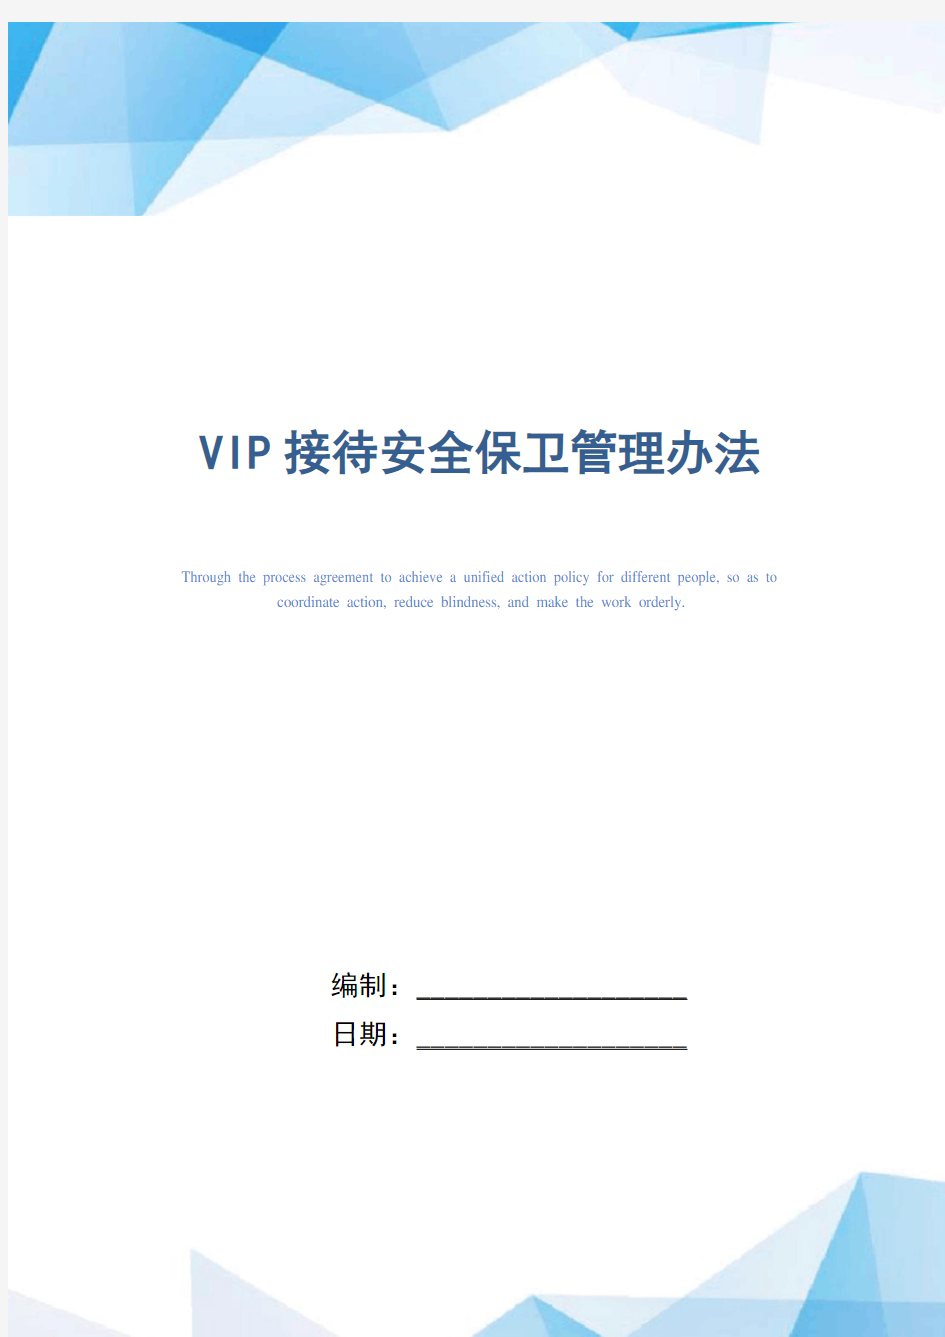 VIP接待安全保卫管理办法(正式版)